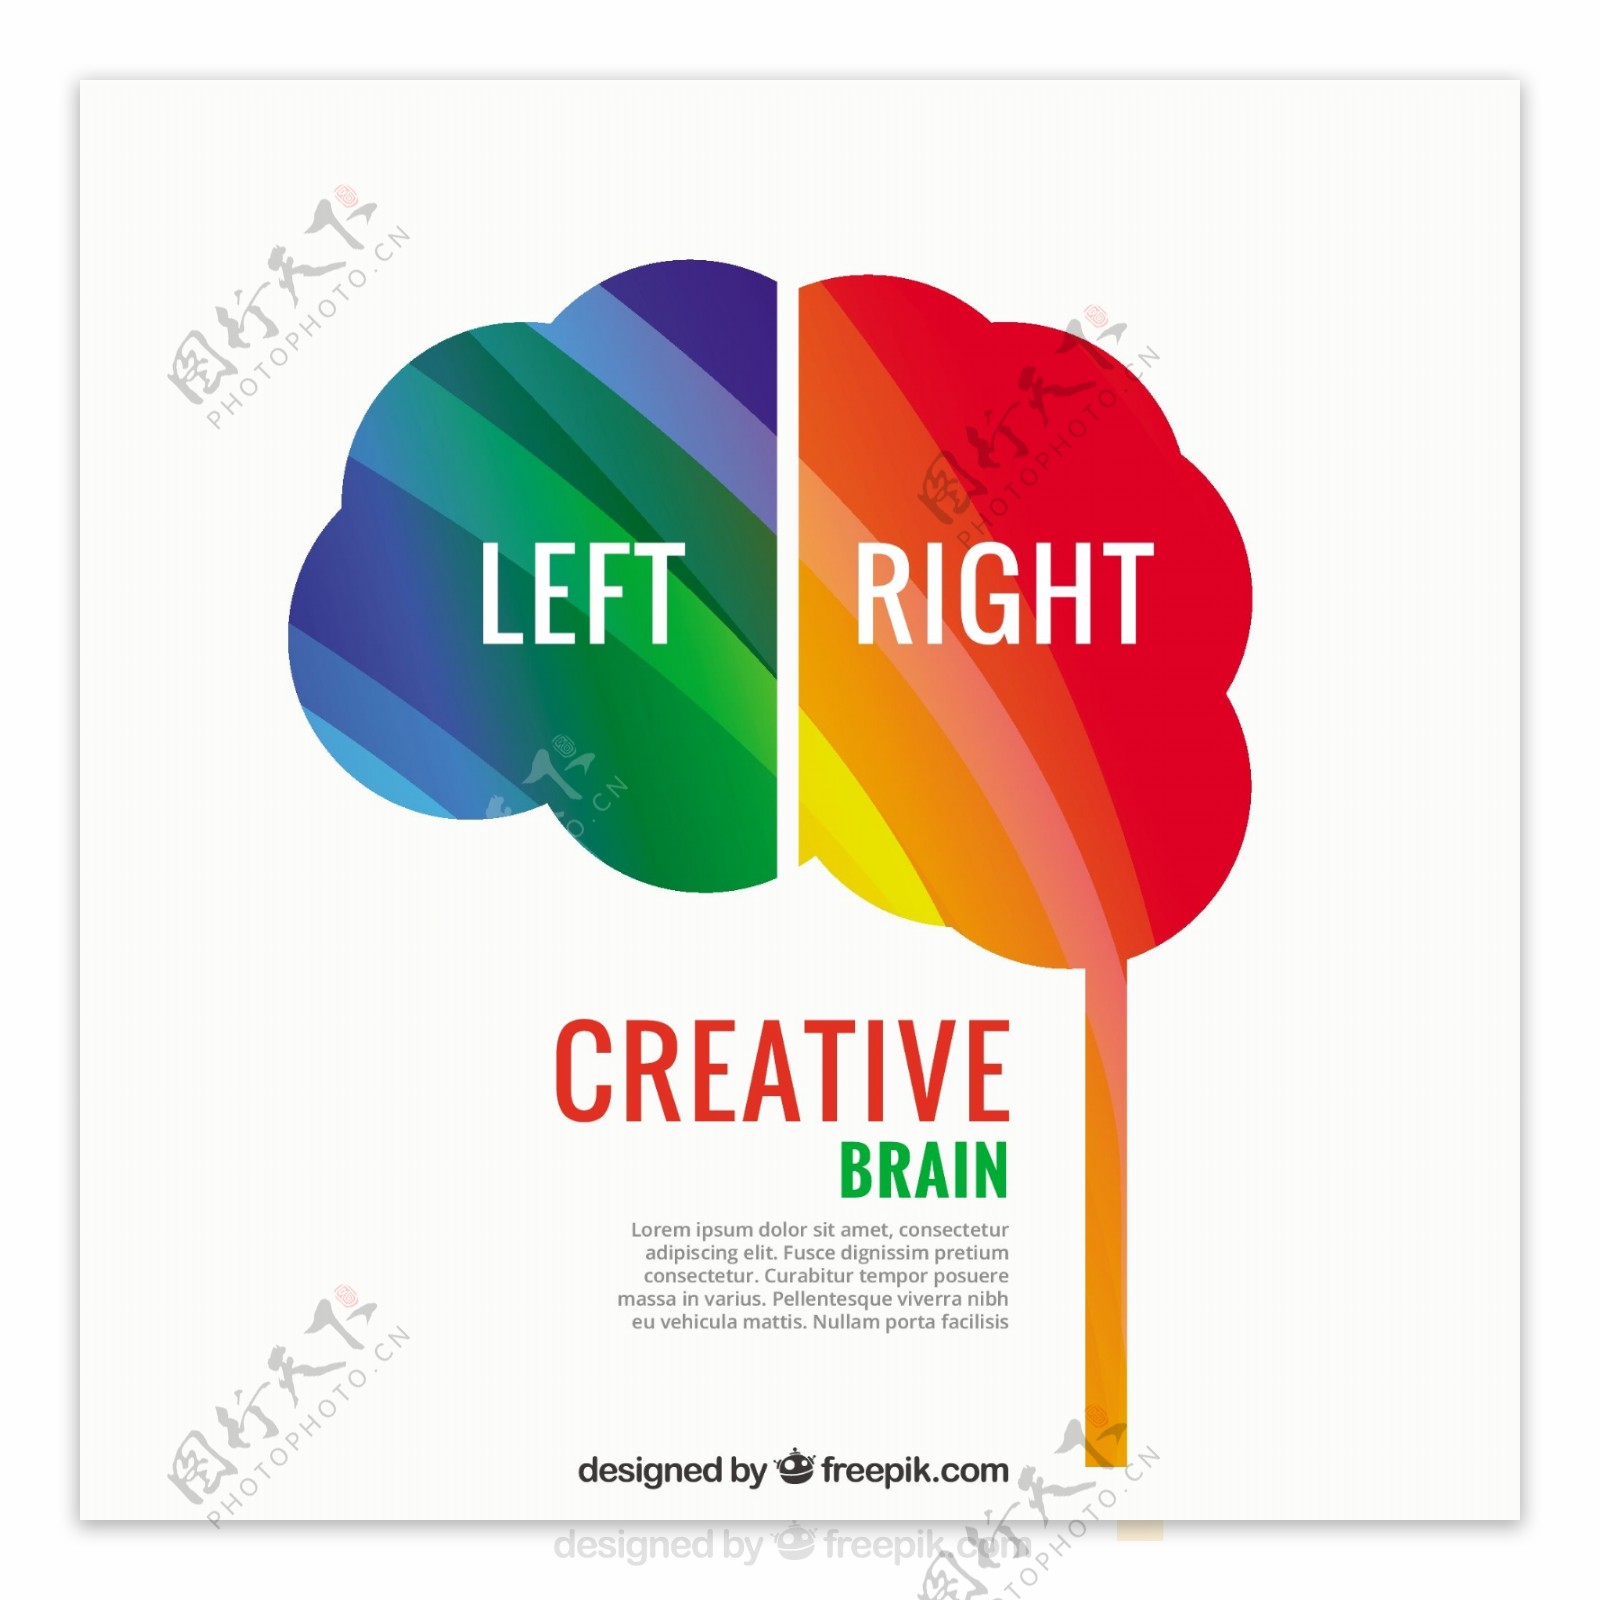 创造性的大脑